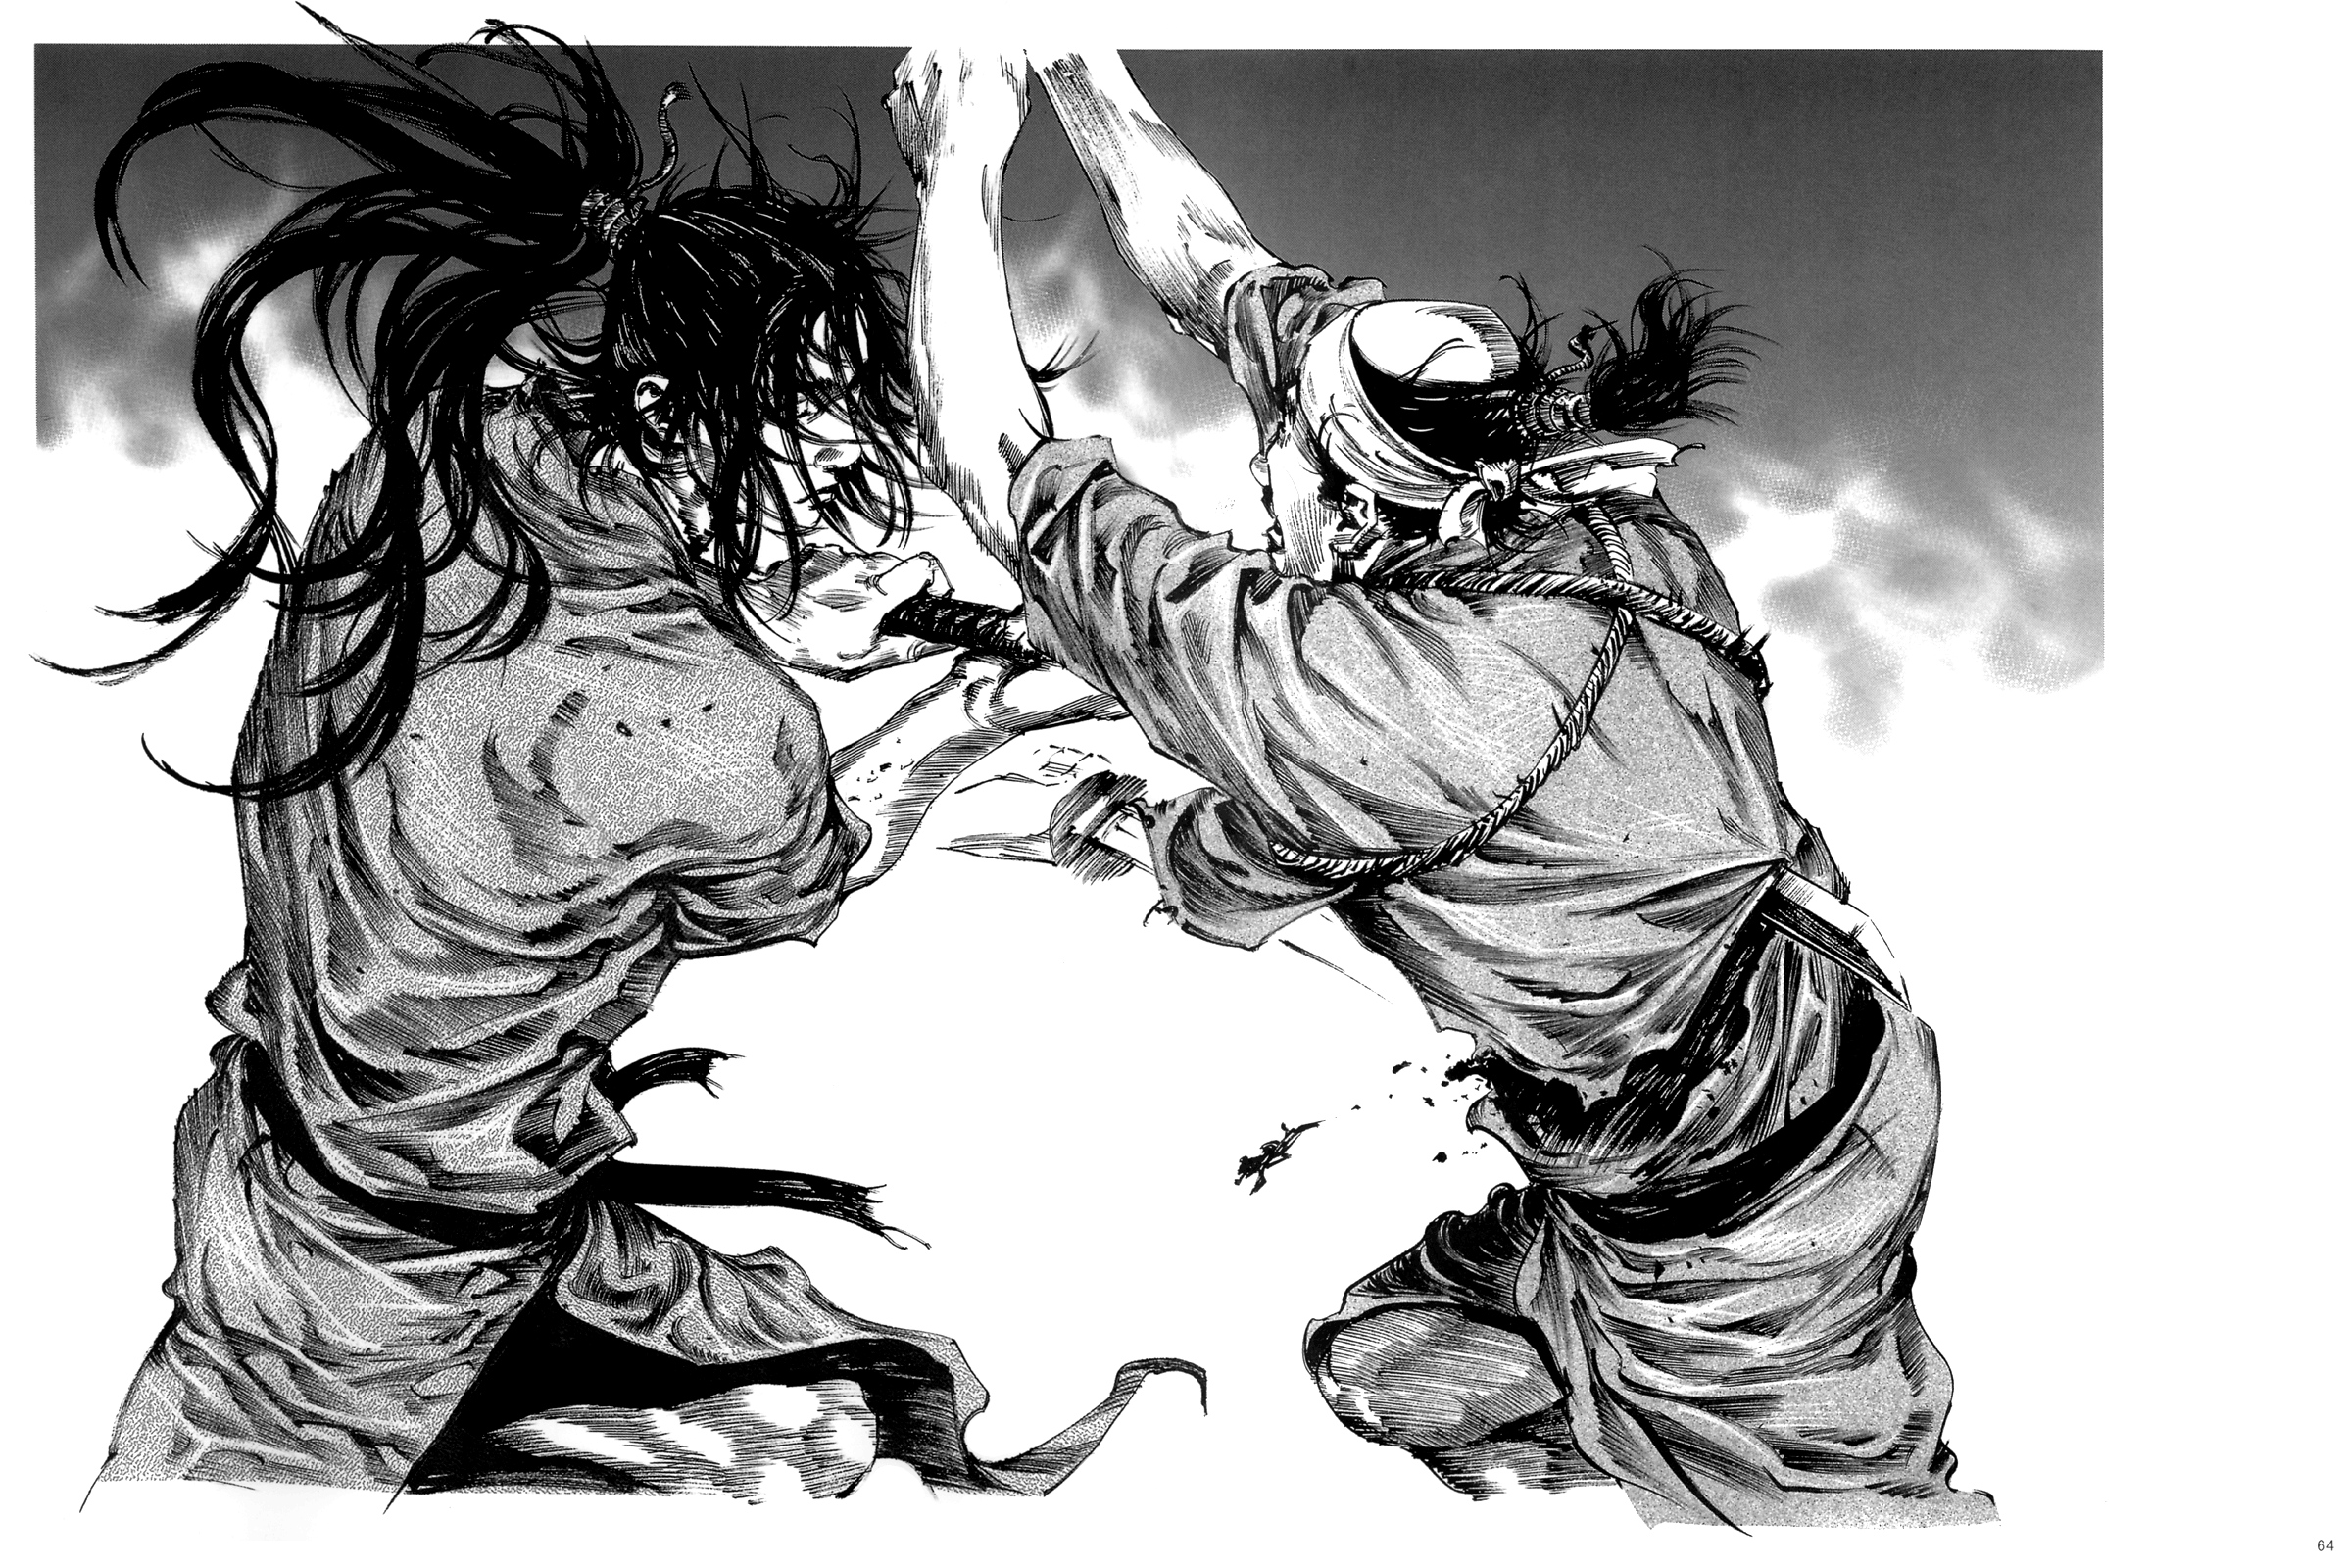 Vagabond, long hair, battles, warriors, manga - desktop wallpaper